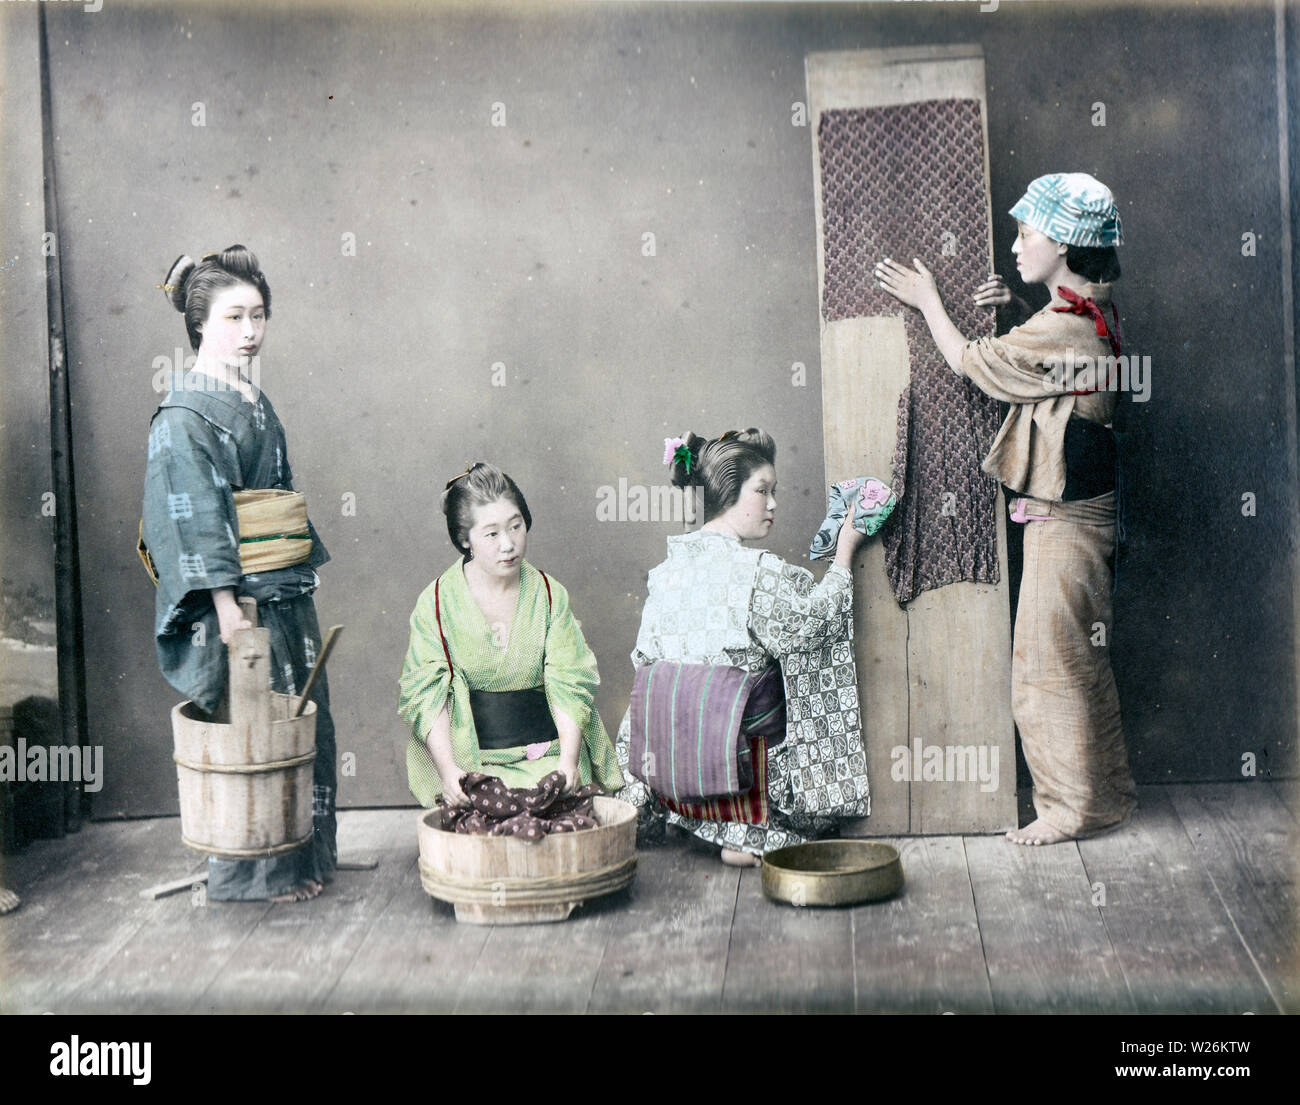 [1890s Japan - Japanische Frauen Waschen] - vier Frauen im Kimono und traditionellen Kopfbedeckungen sind die Wäsche machen. Die Frau in der Mitte ist das waschen Kleidung in einer Oke (hölzerne Schaufel), während eine Frau auf der rechten Seite ist ein Stück Textil Verbreitung auf einem Holzbrett. 19 Vintage albumen Foto. Stockfoto